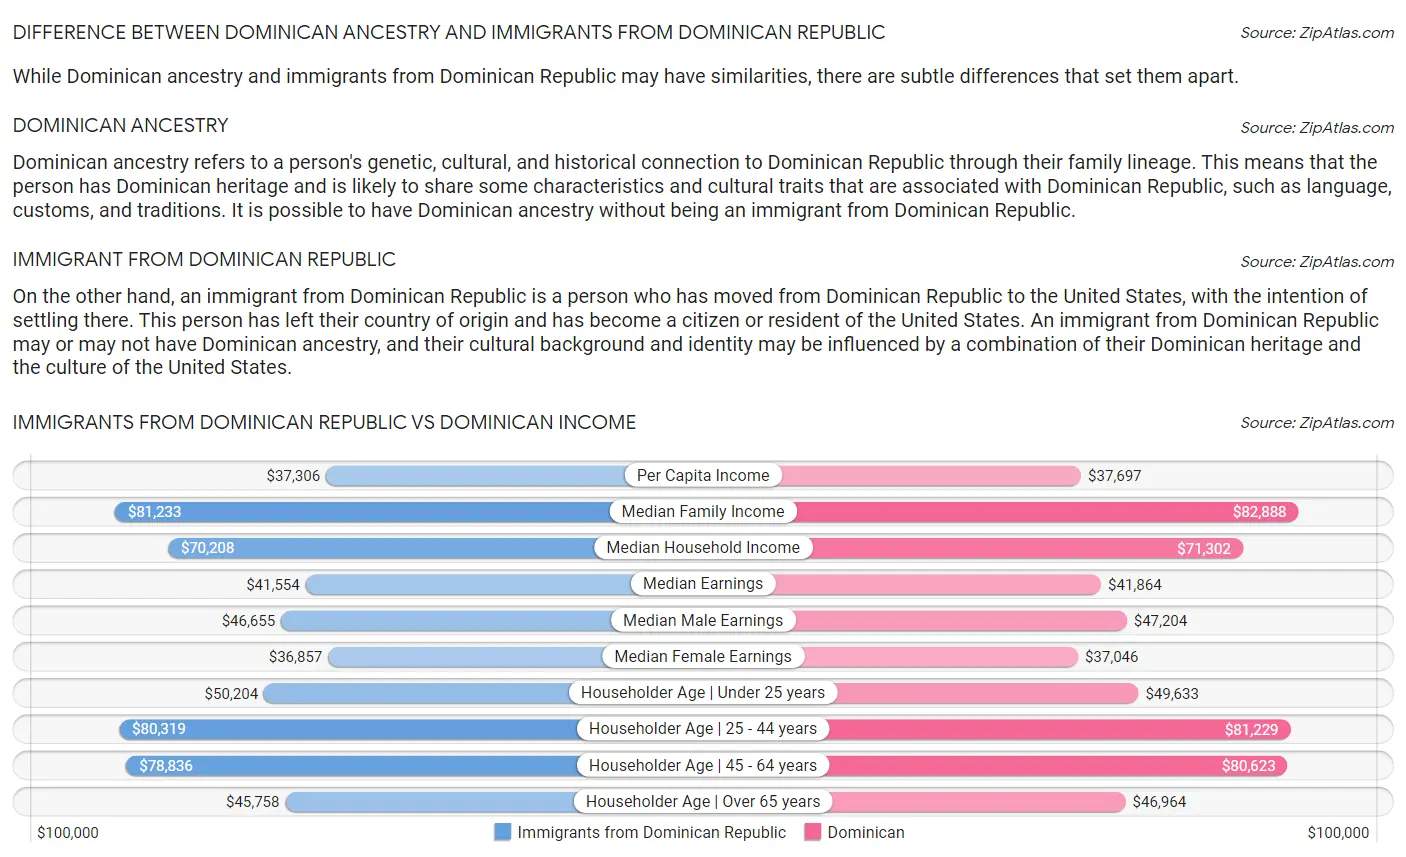 Immigrants from Dominican Republic vs Dominican Income